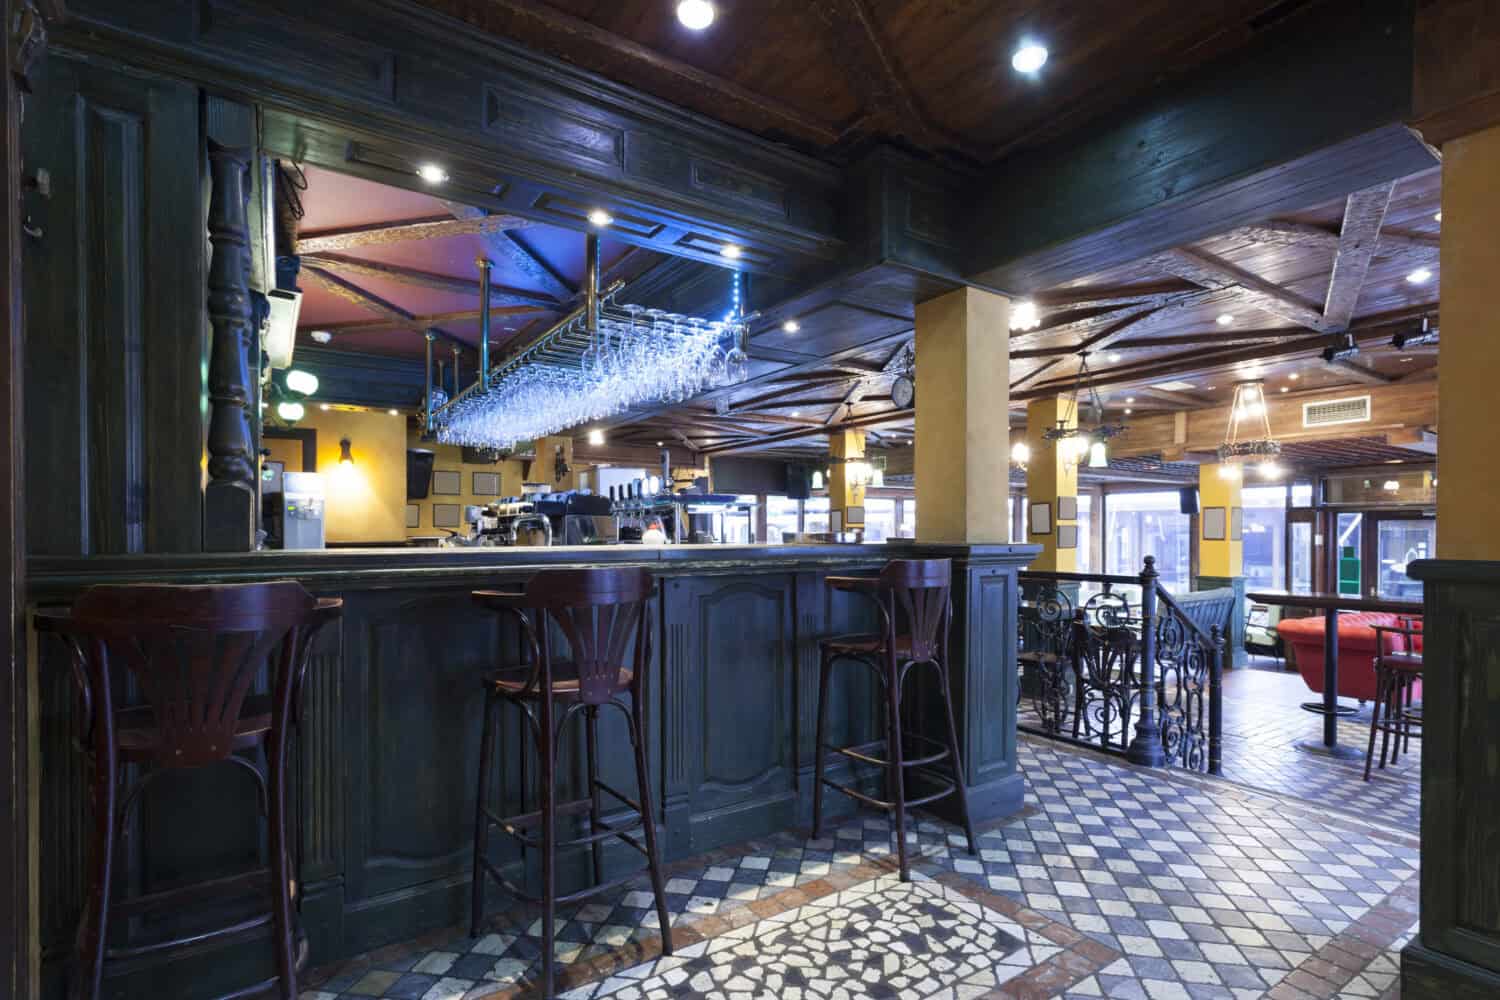 Irish pub interior tiled floor